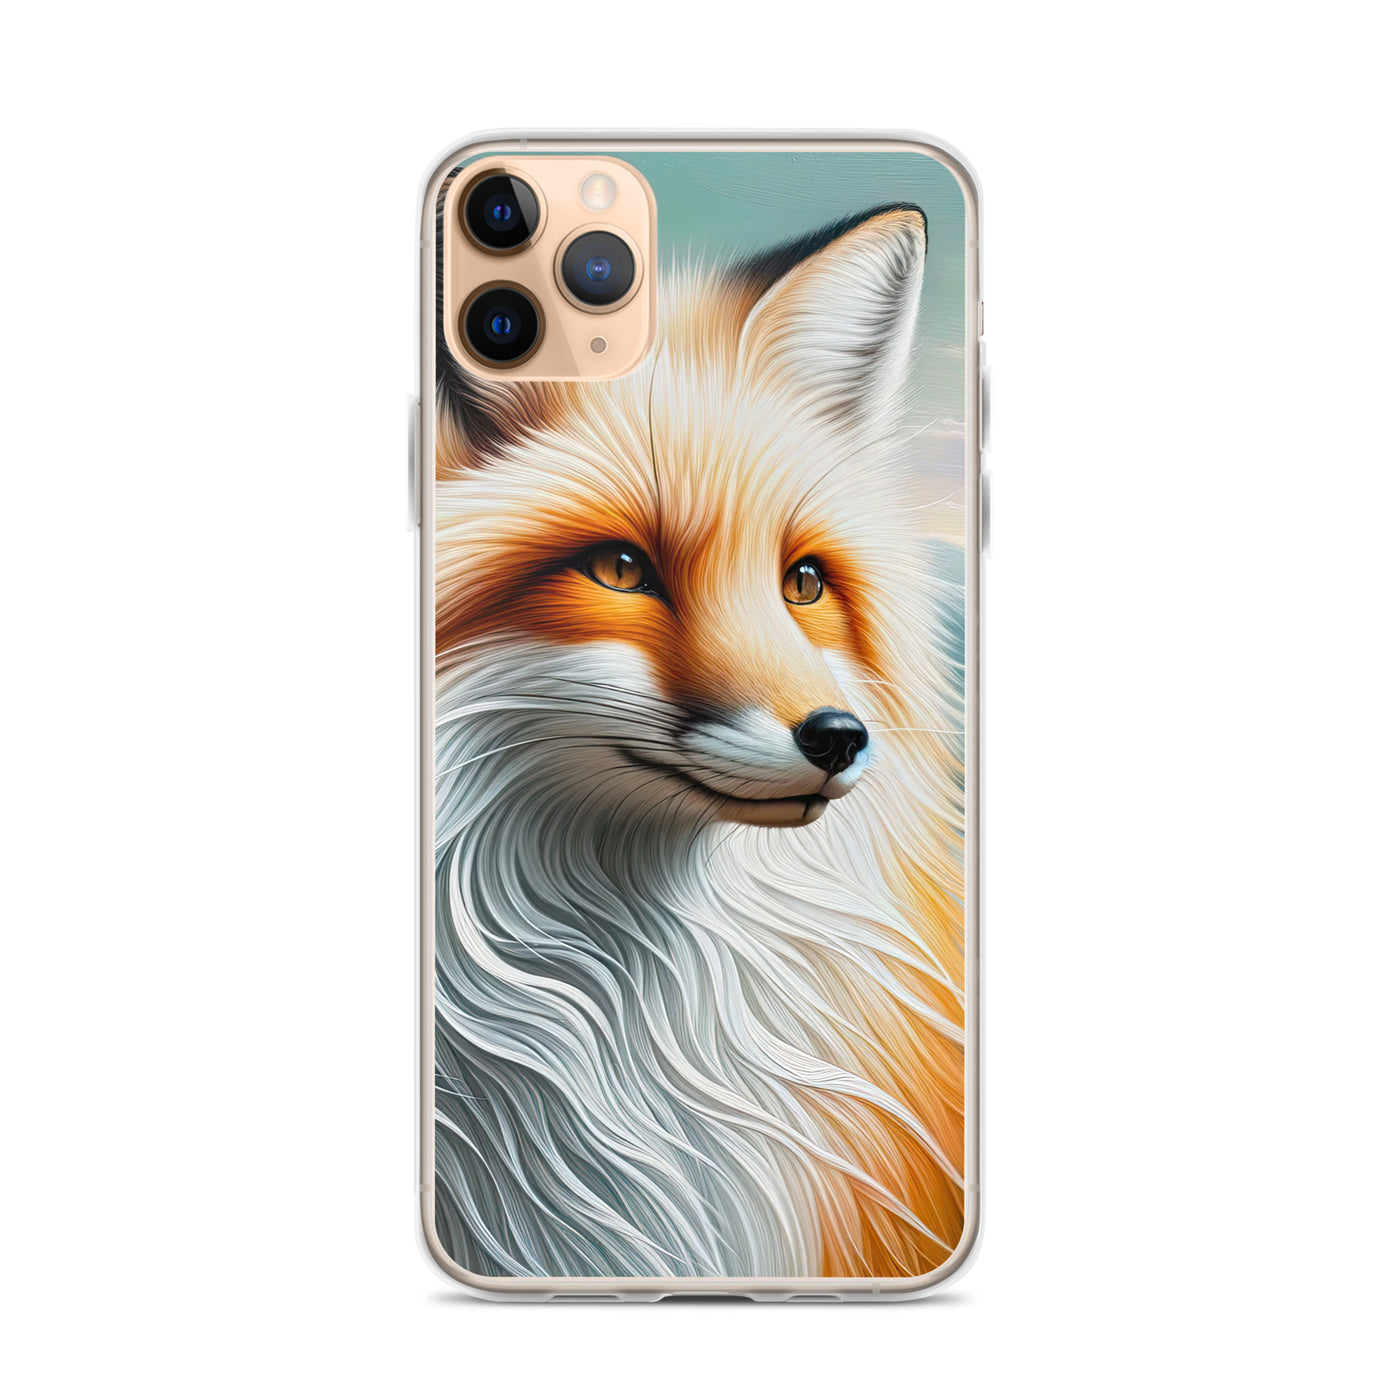 Ölgemälde eines anmutigen, intelligent blickenden Fuchses in Orange-Weiß - iPhone Schutzhülle (durchsichtig) camping xxx yyy zzz iPhone 11 Pro Max